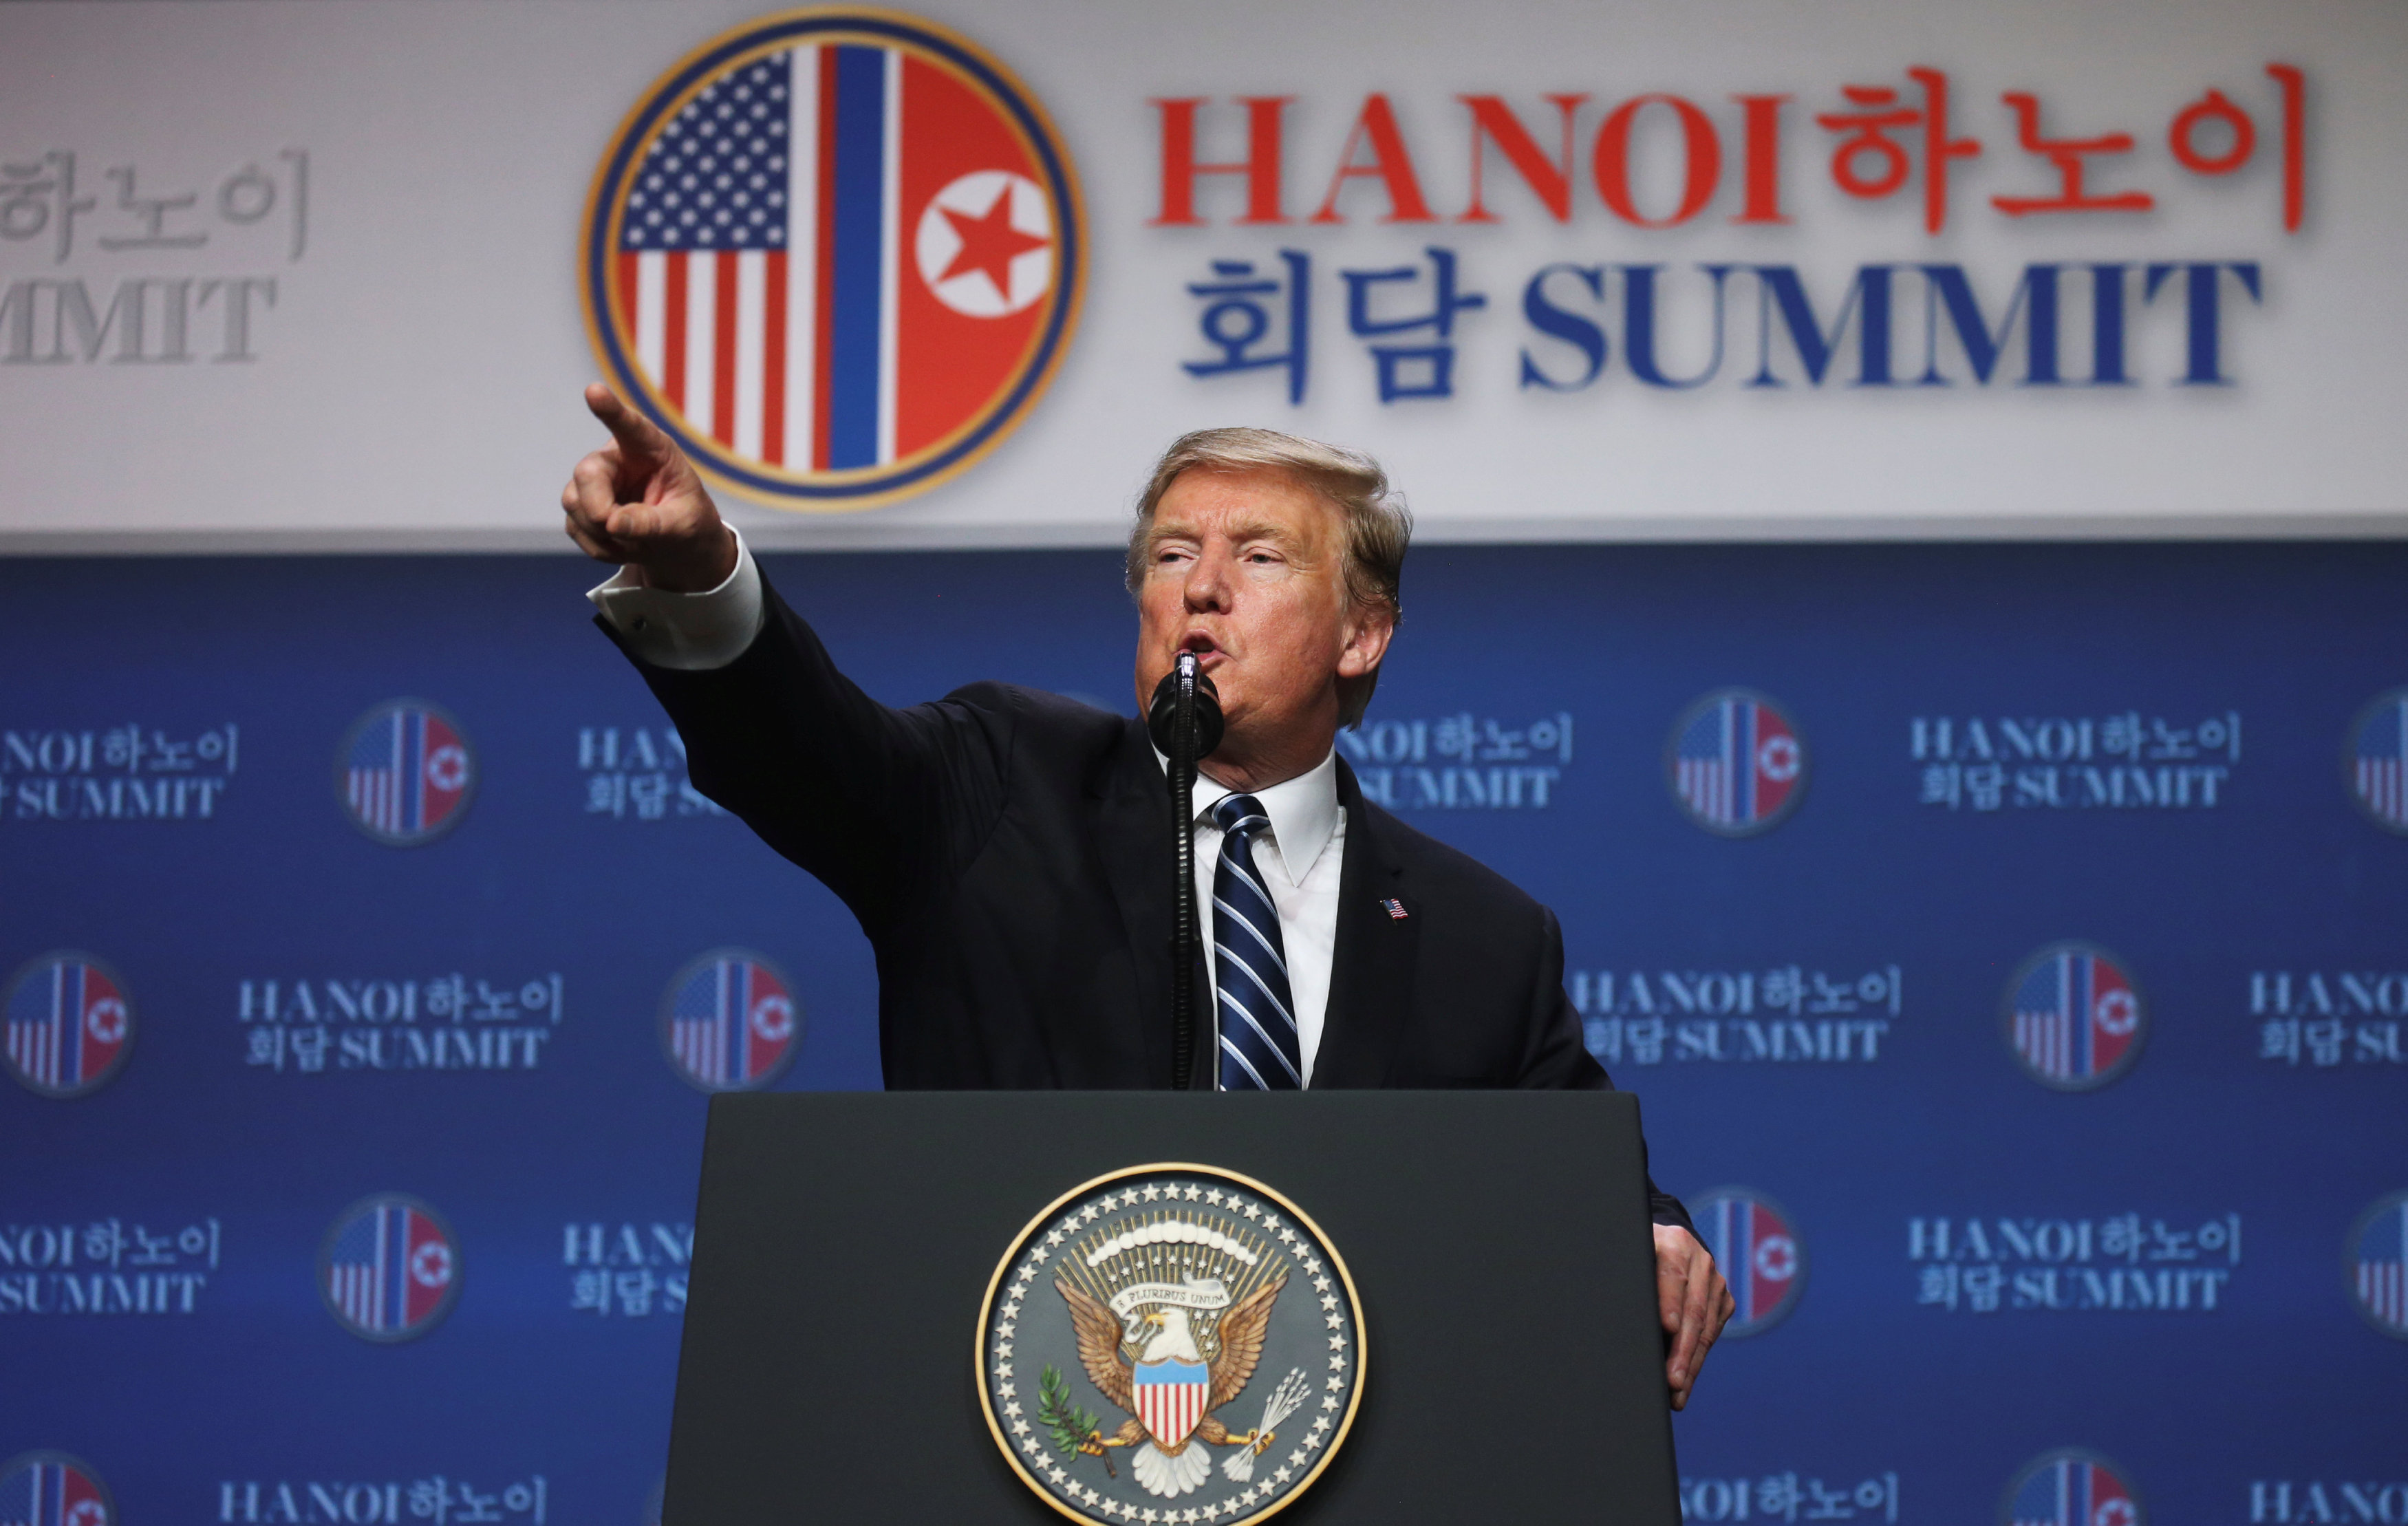 Termina abruptamente y sin ningún acuerdo la cumbre entre Trump y Kim (Fotos y Video)